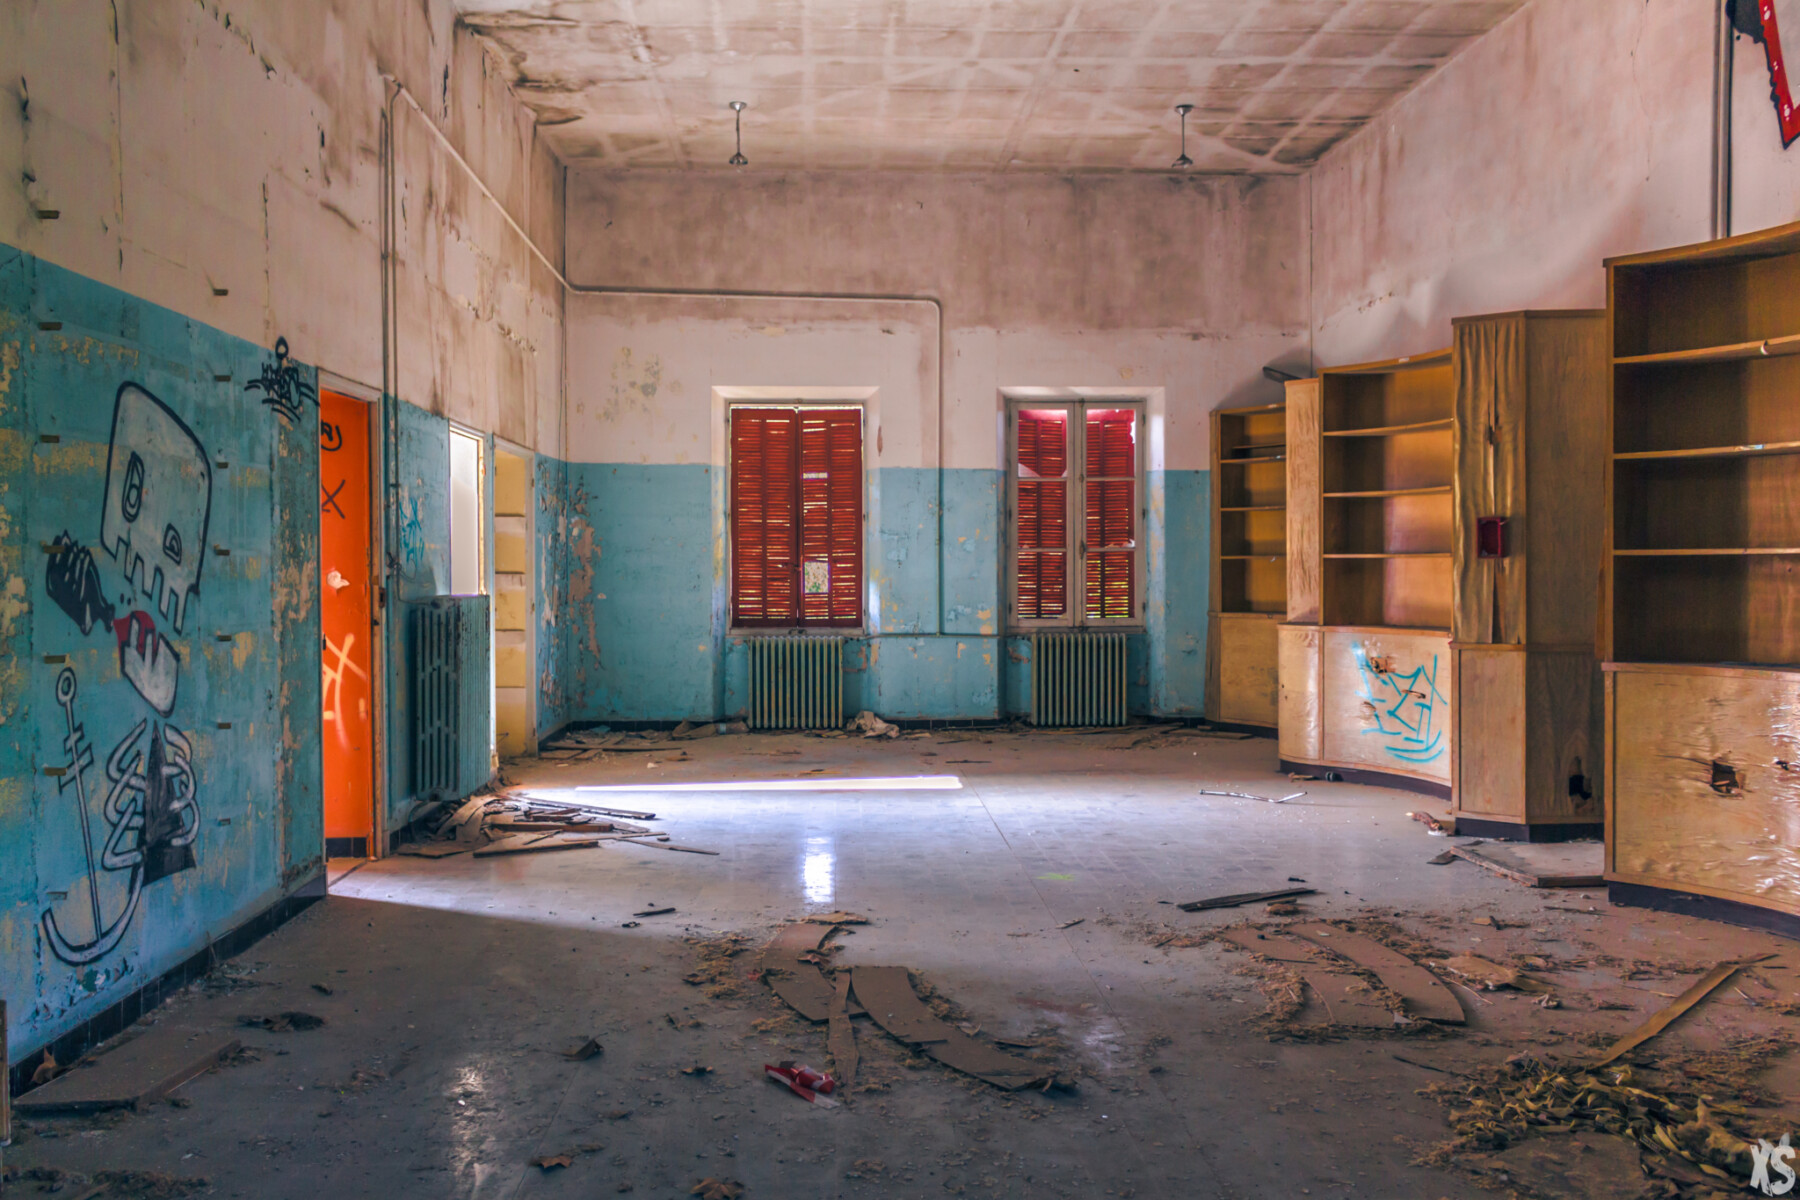 Sanatorium abandonné dans le sud de la France | urbexsession.com/sanatorium-julia-fazekas | Urbex France